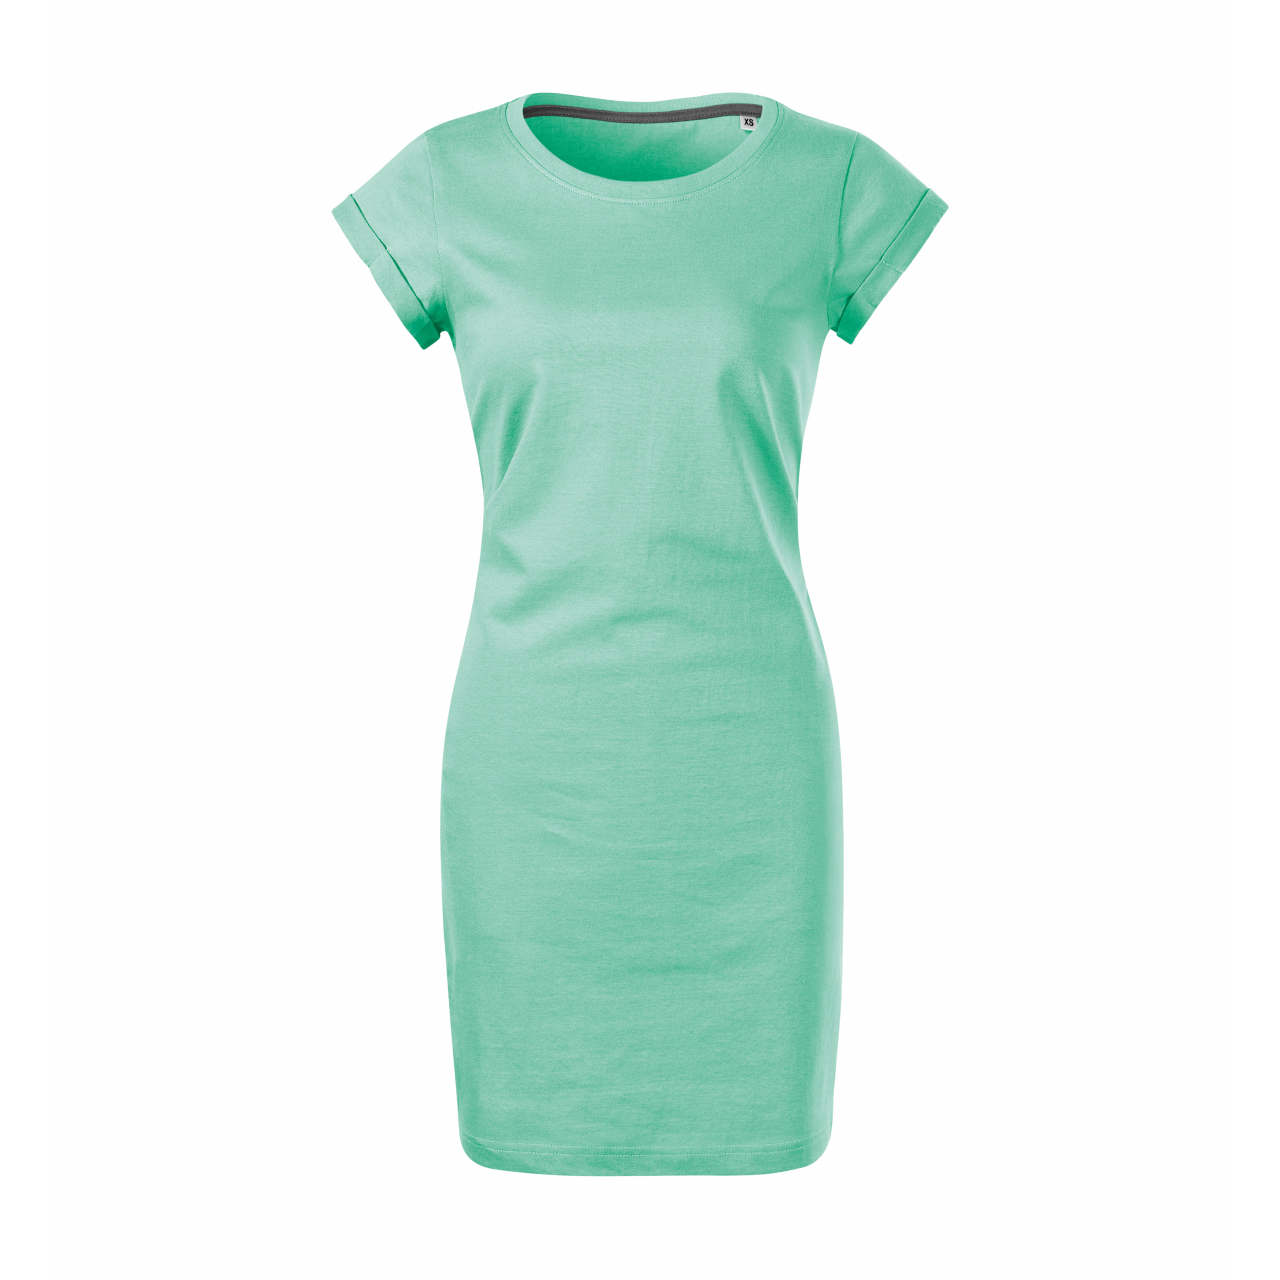 Šaty dámské Malfini Freedom - světle zelené, S